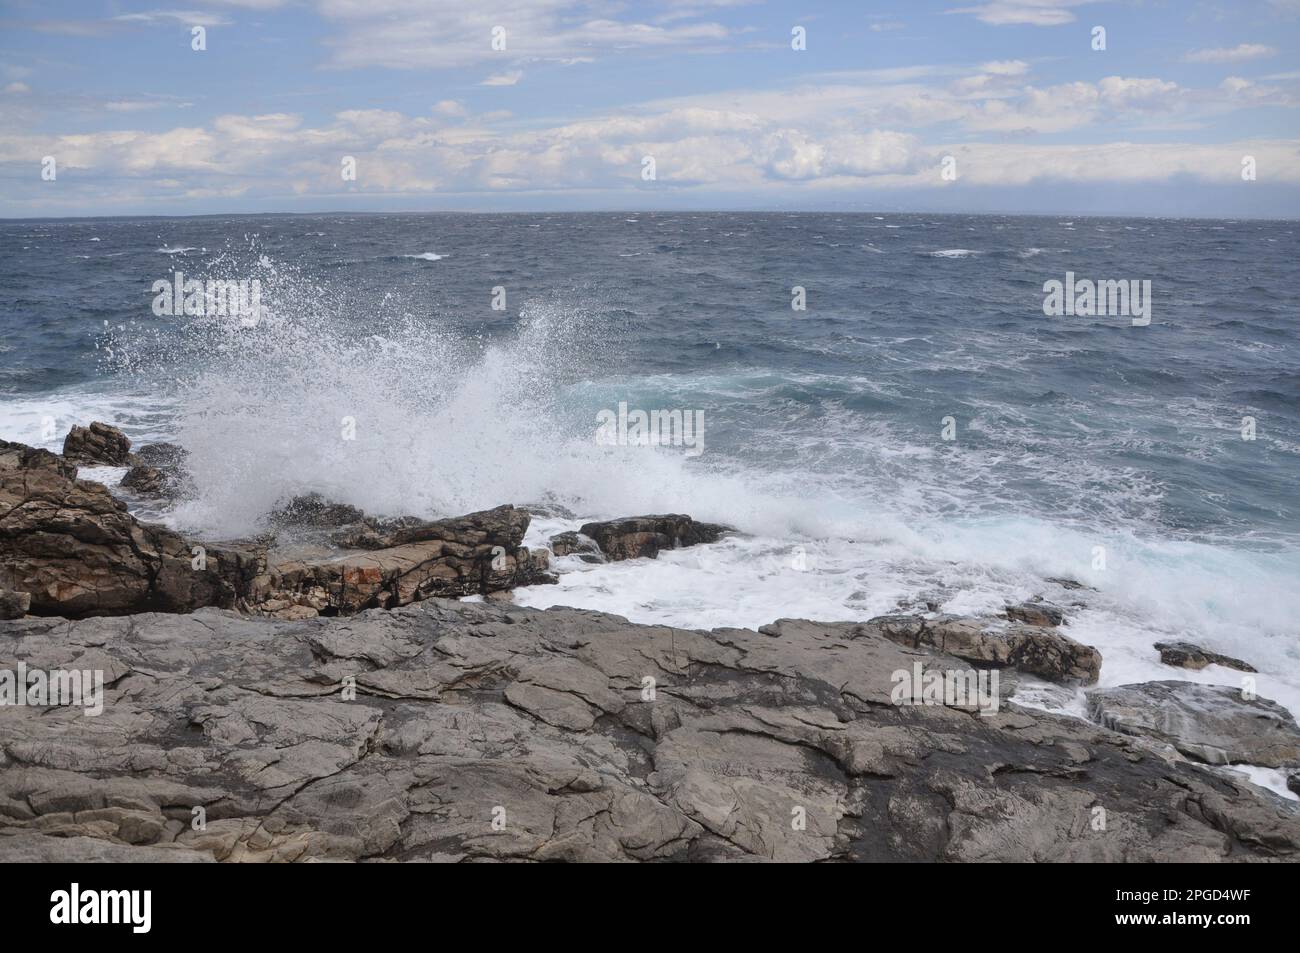 Die Meereswelle stürzt auf den Felsen und lässt das spritzwassernde Wasser und den weißen Luftschaum blasen. Stockfoto